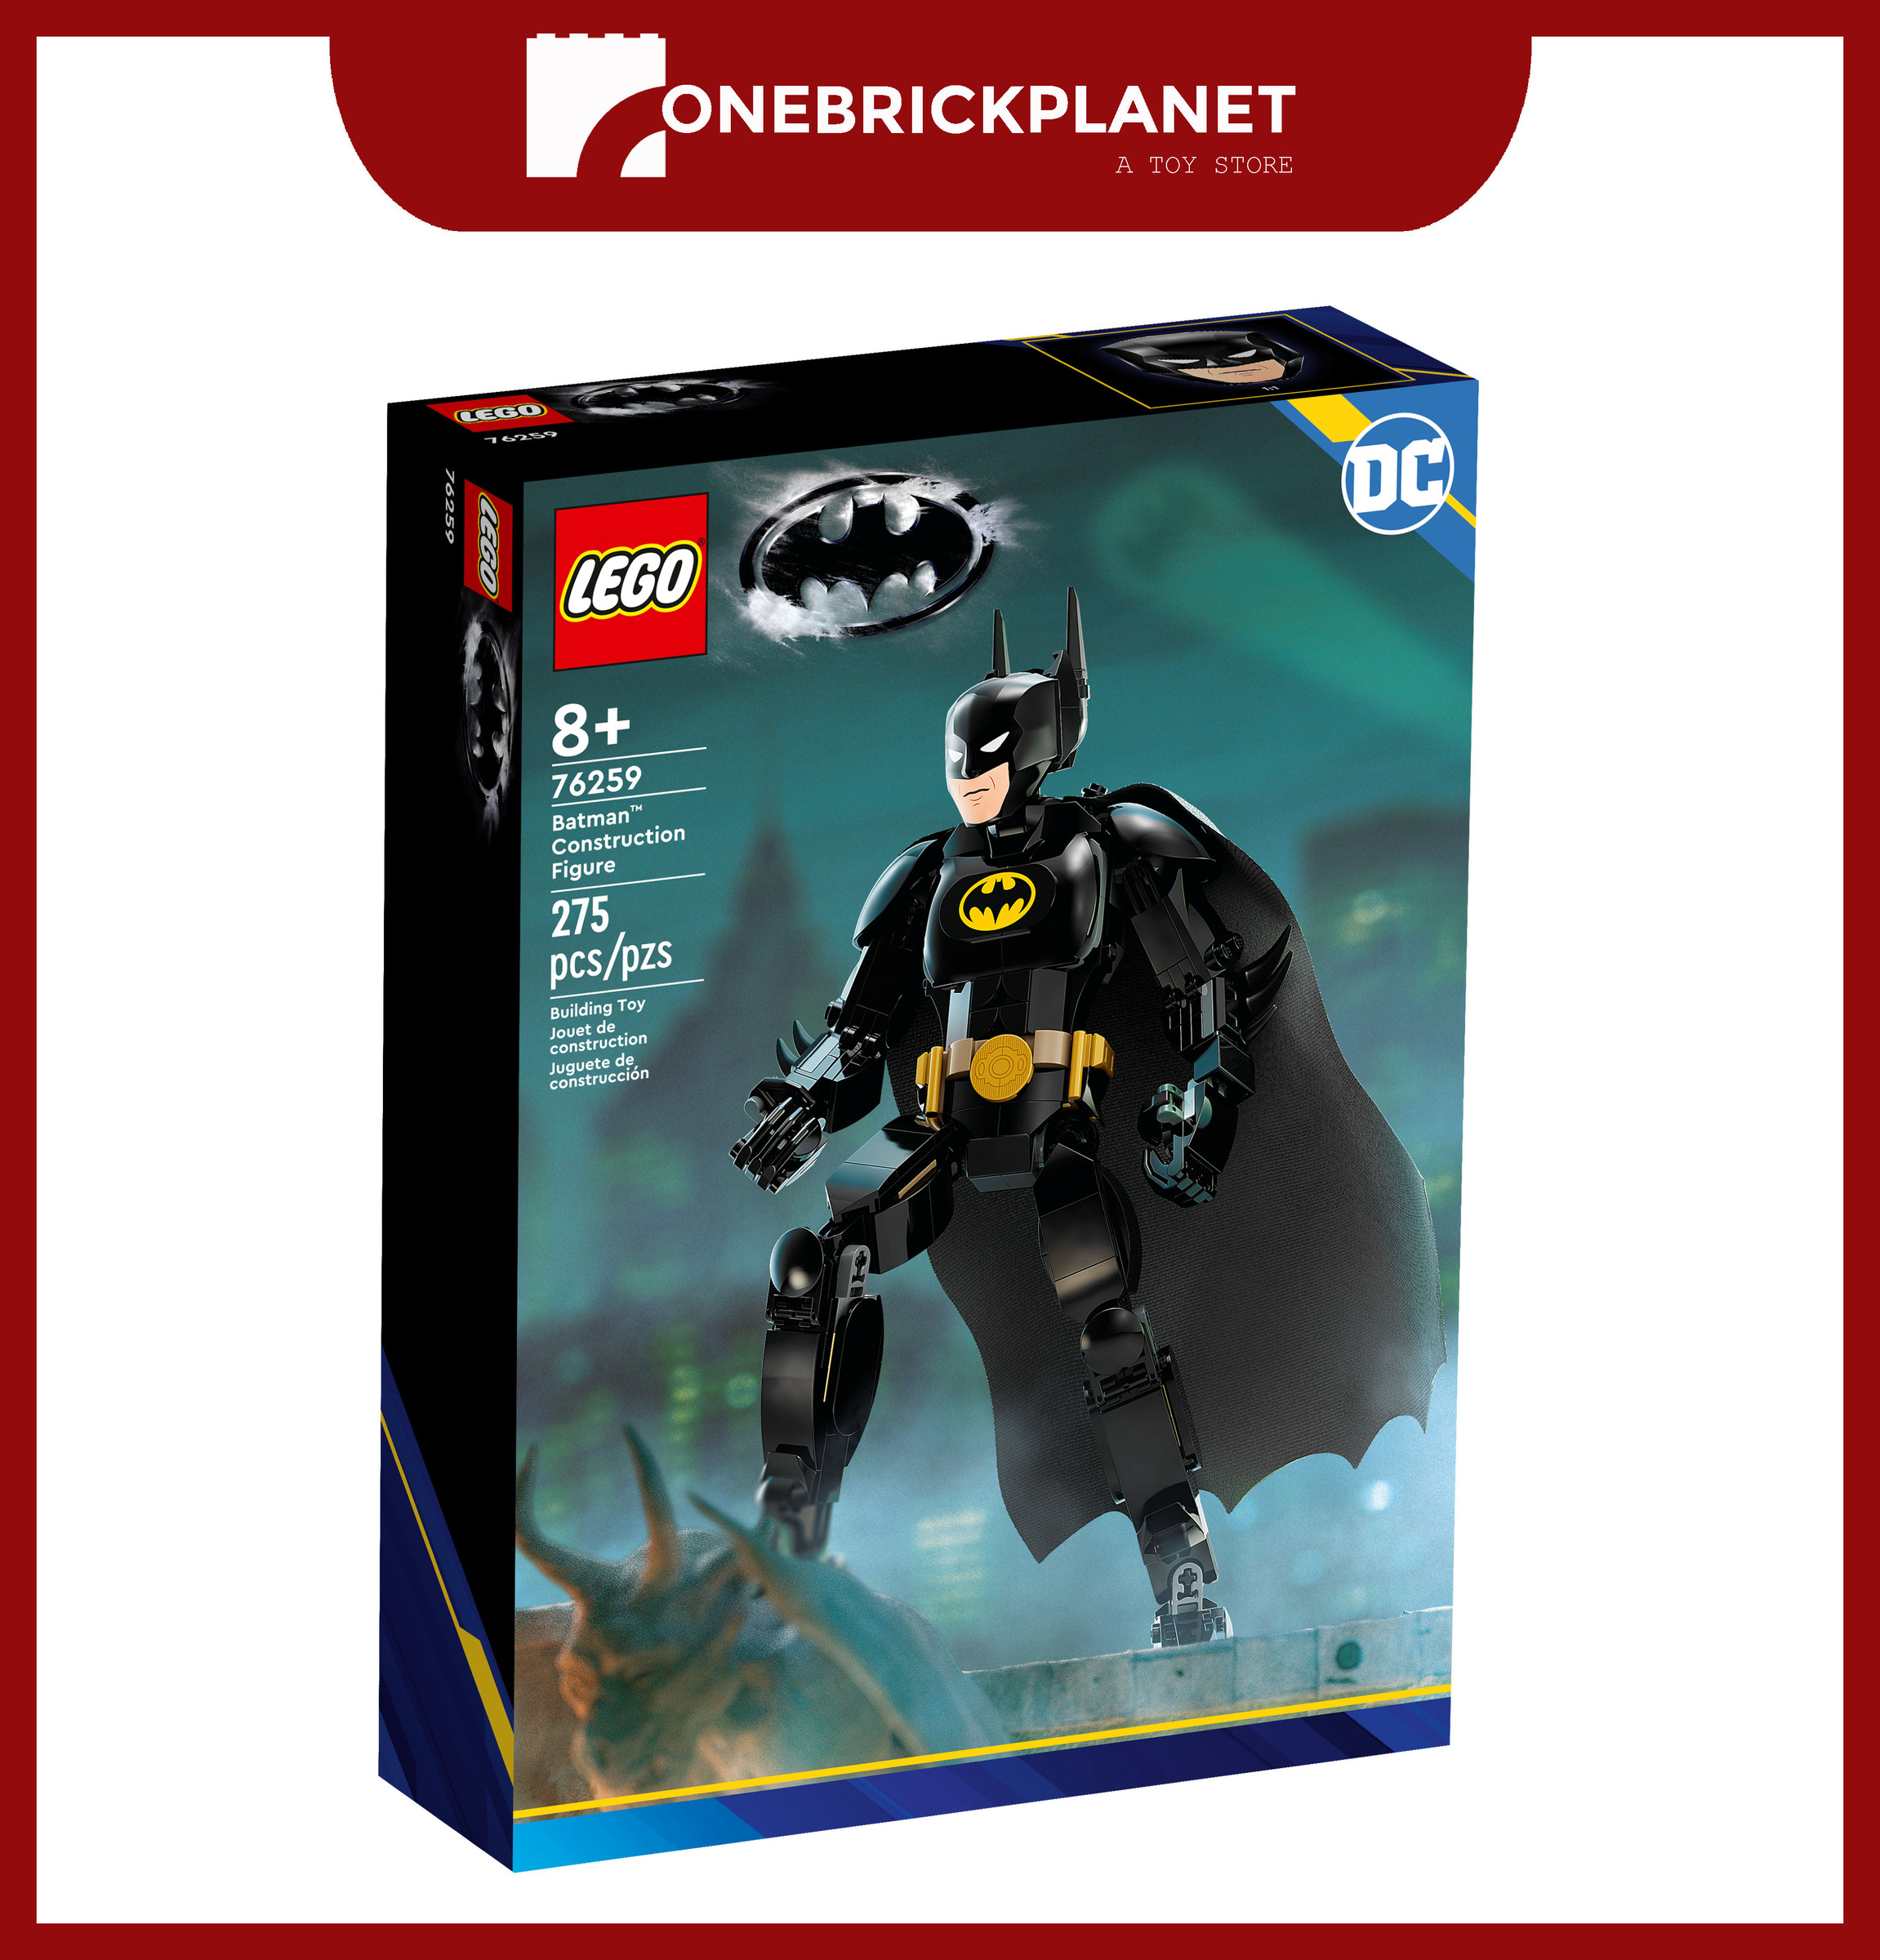 LEGO 76259 DC - Batman Construction Figure – One Brick Planet